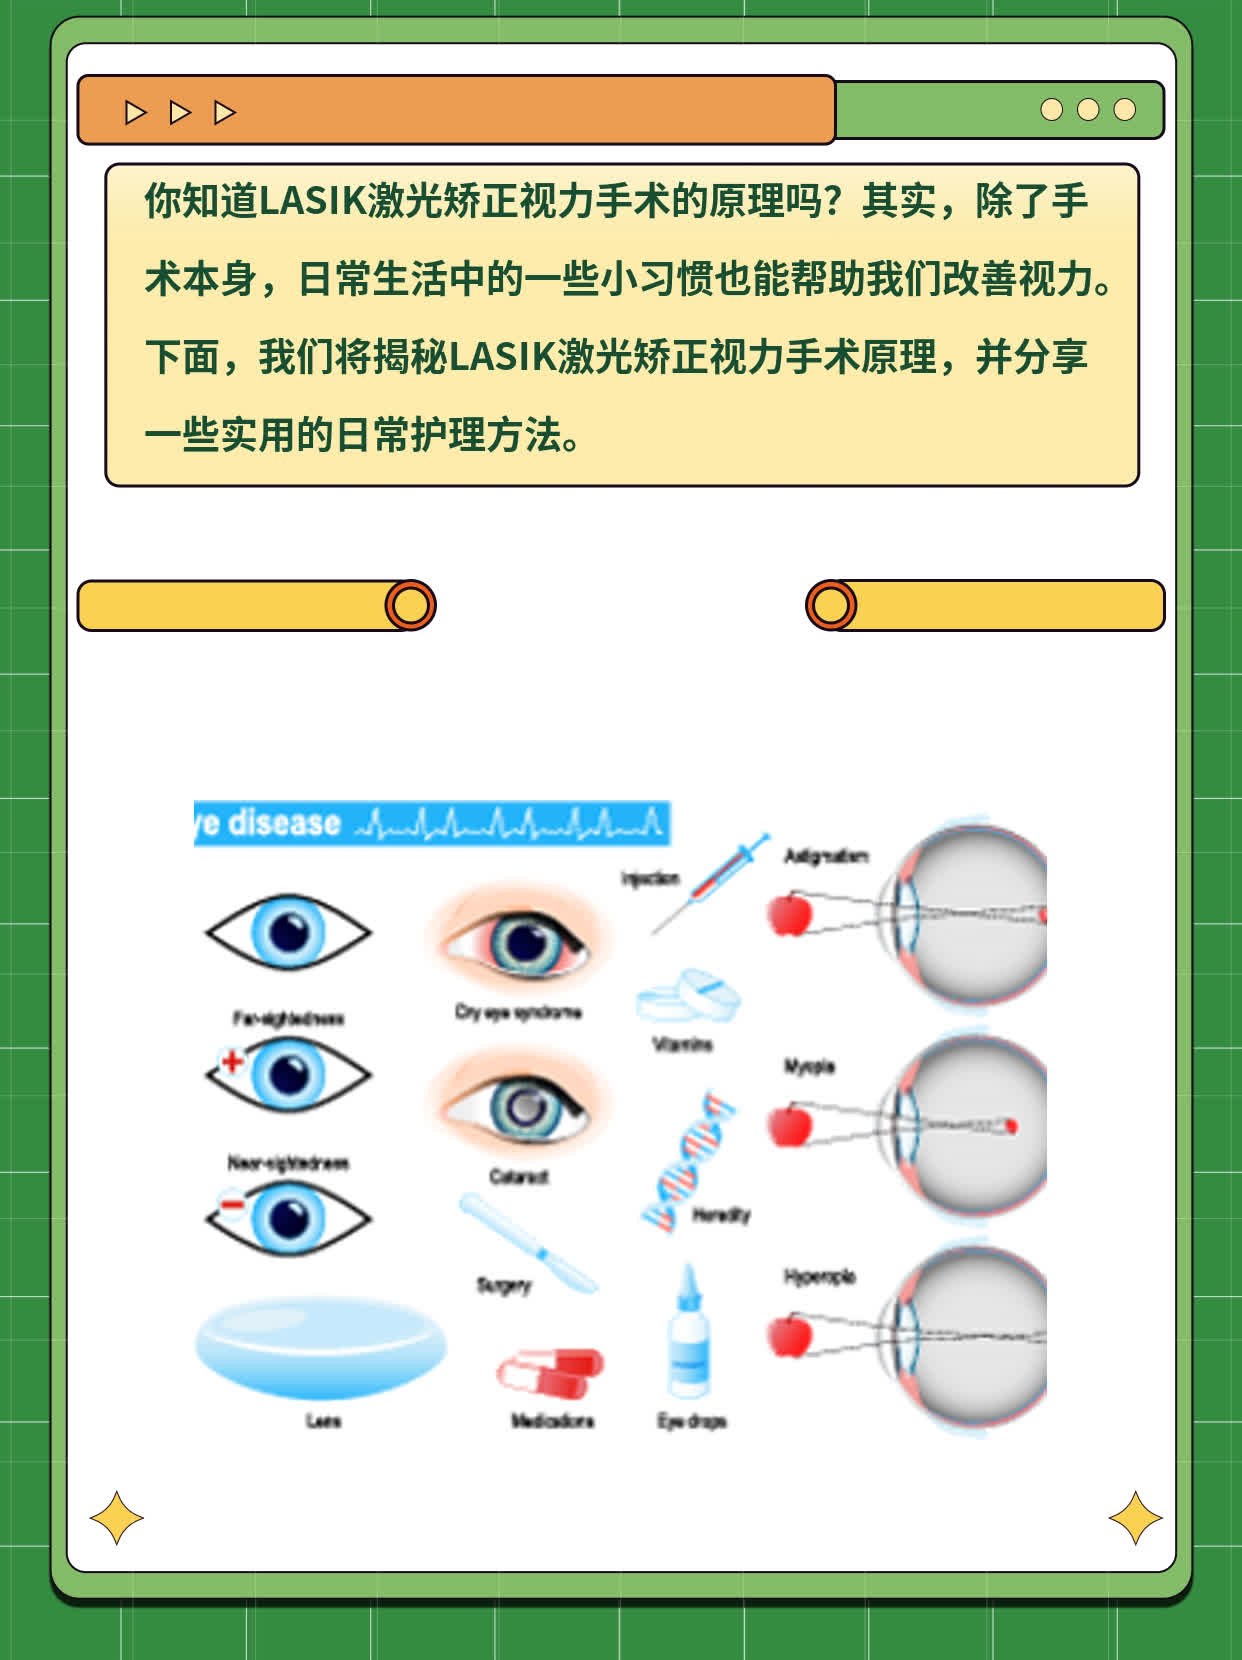 揭秘LASIK激光矫正视力手术原理